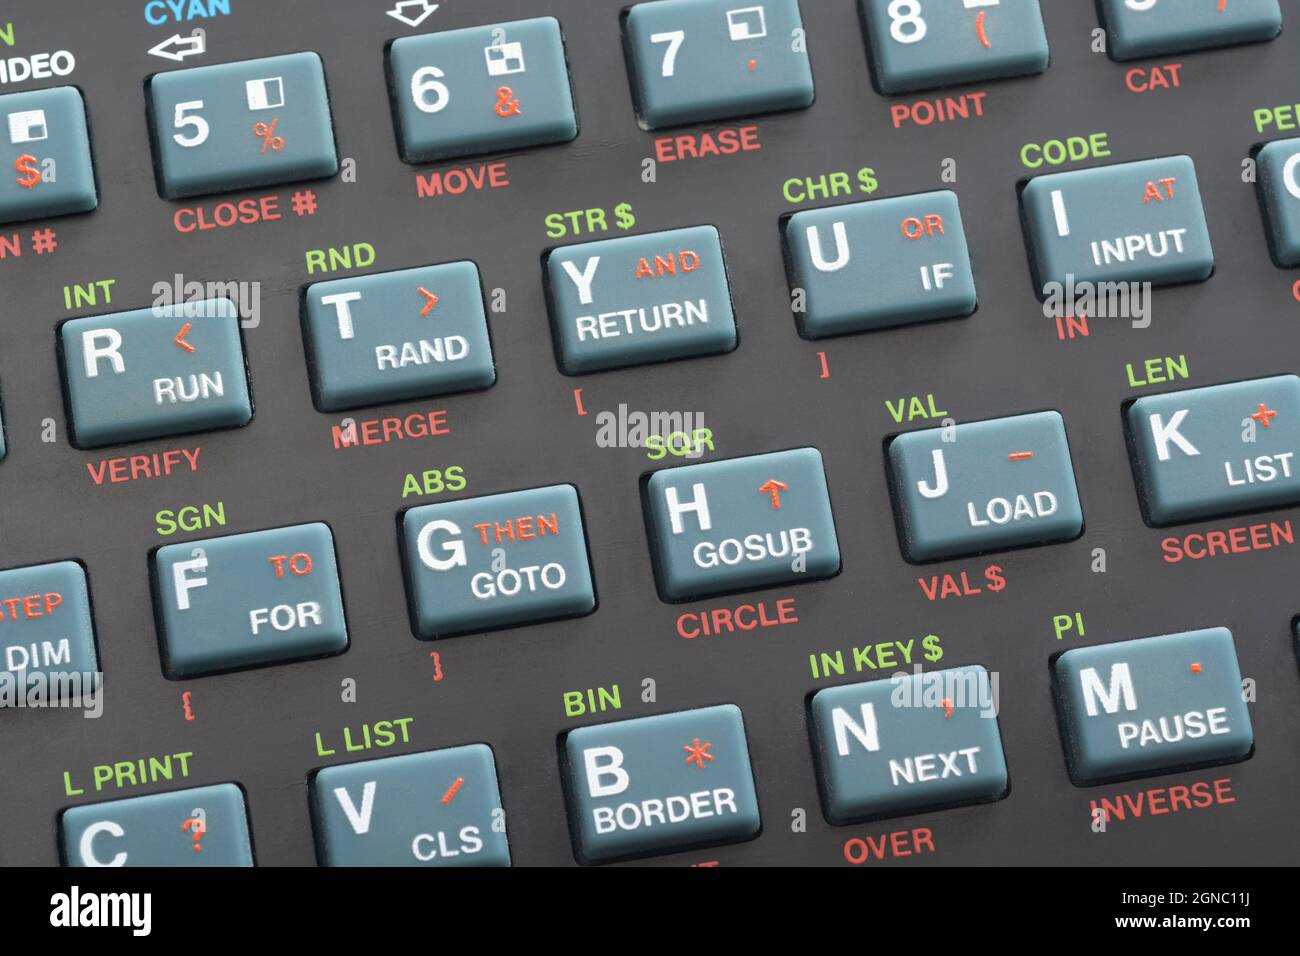 1982 tastiera Sinclair ZX Spectrum con tasti DI programmazione DI BASE sovrapposti al tradizionale layout Qwerty. Vedere Note. Foto Stock